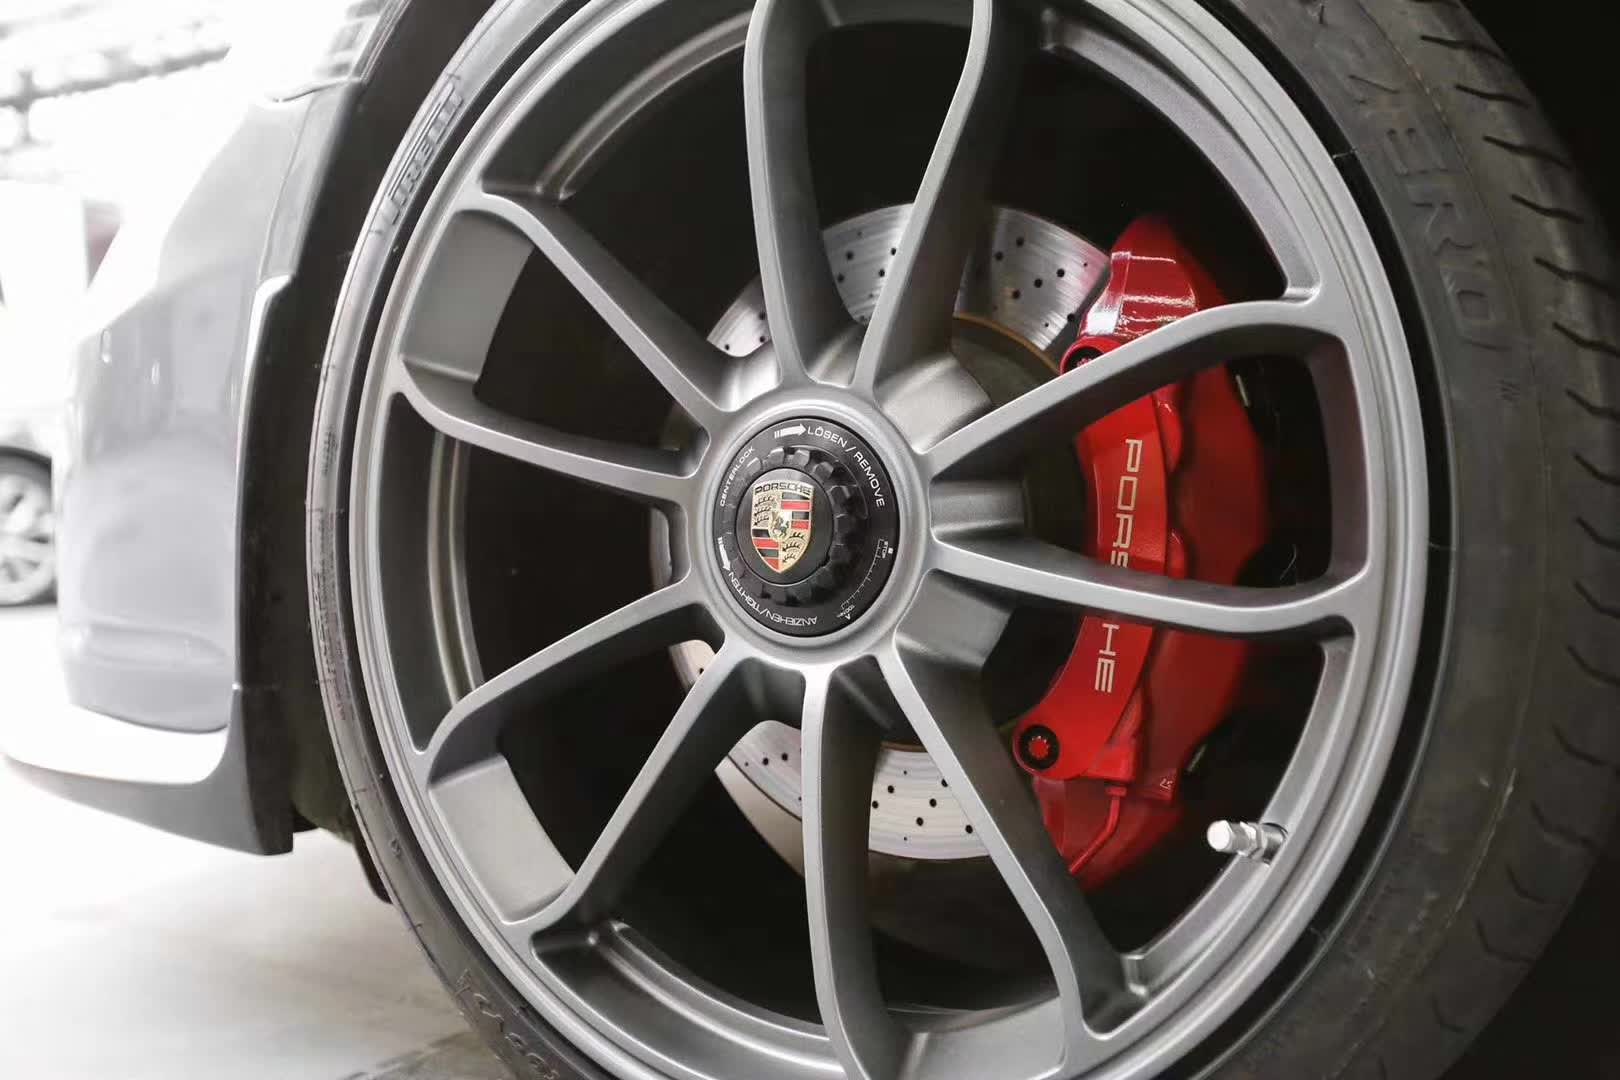 Porsche 718 Center lock wheels 23 inch rim